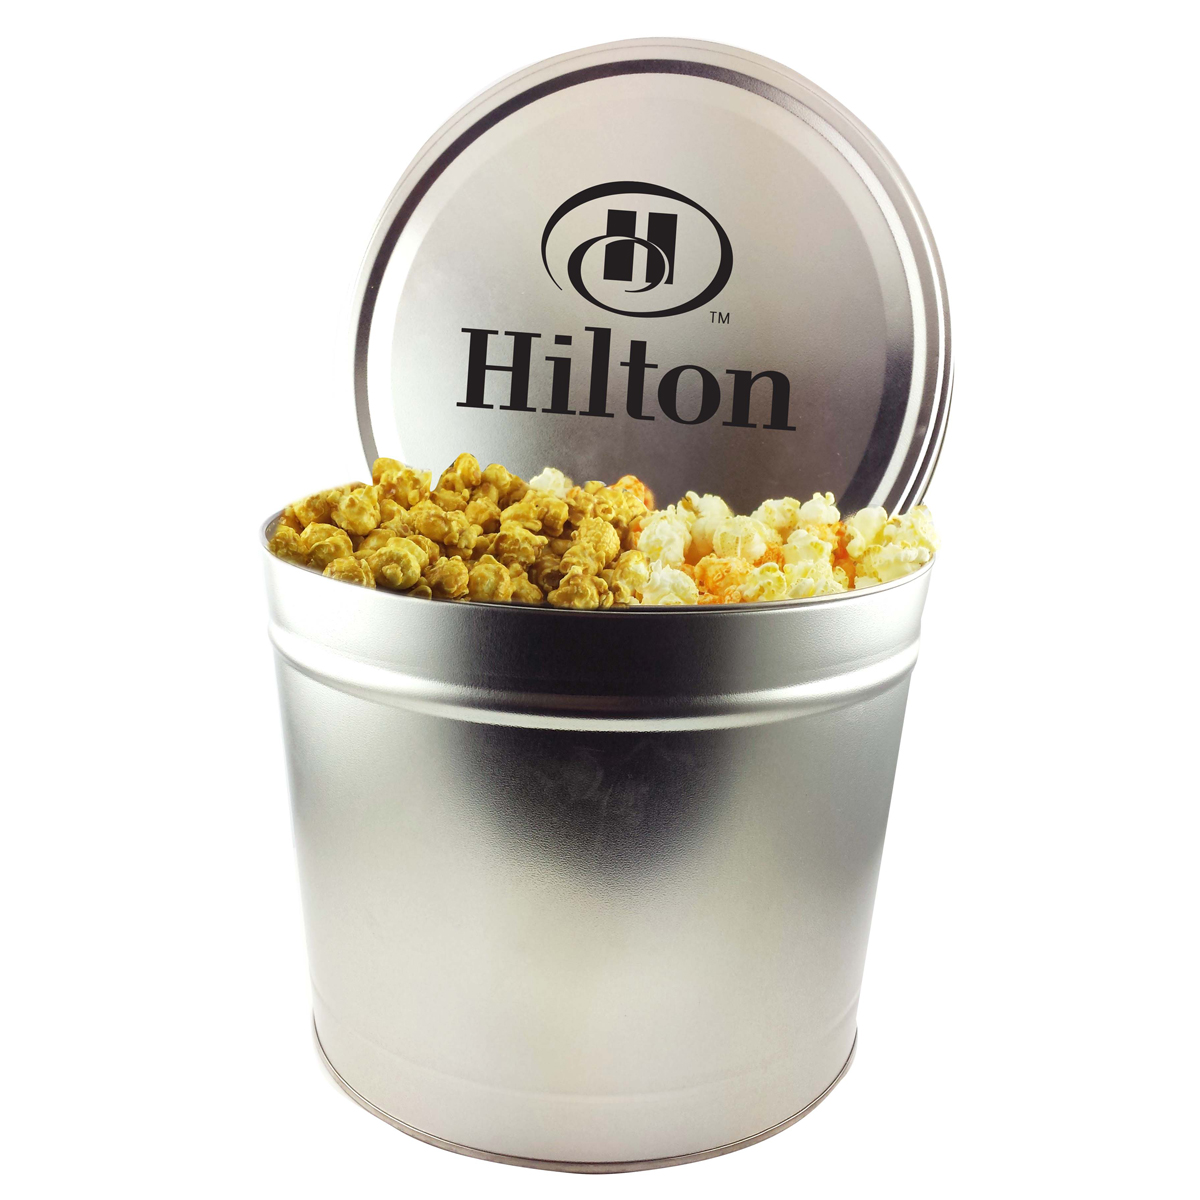 Popcorn Tin